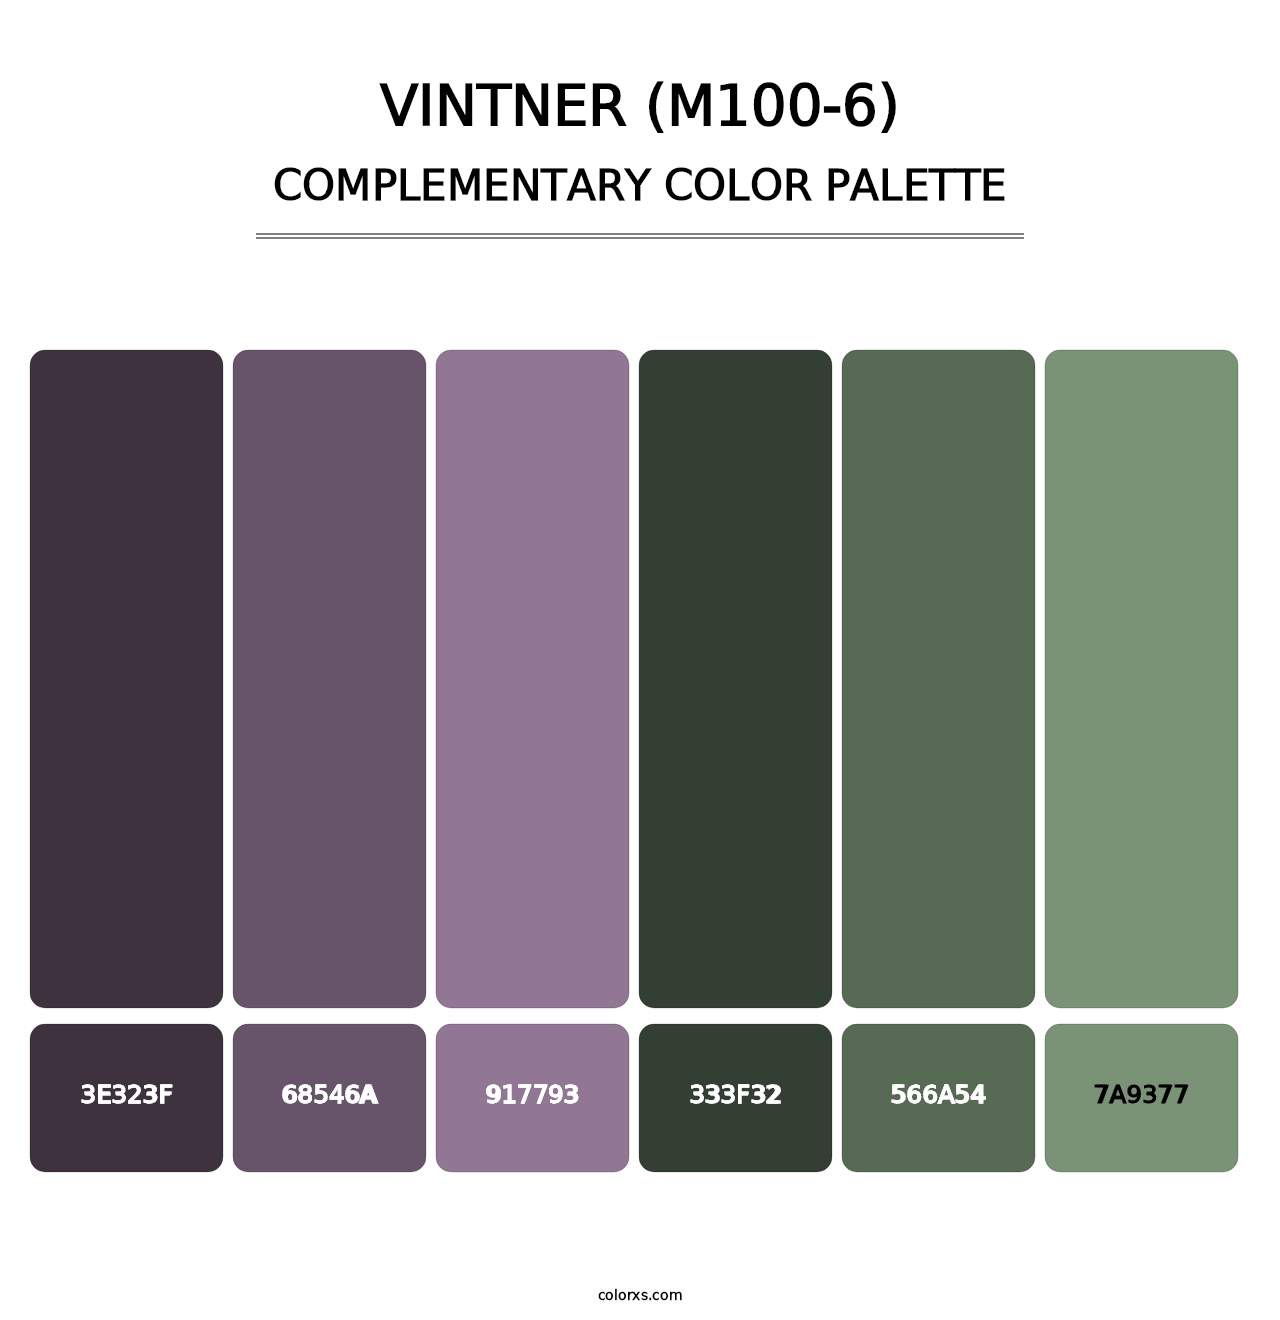 Vintner (M100-6) - Complementary Color Palette